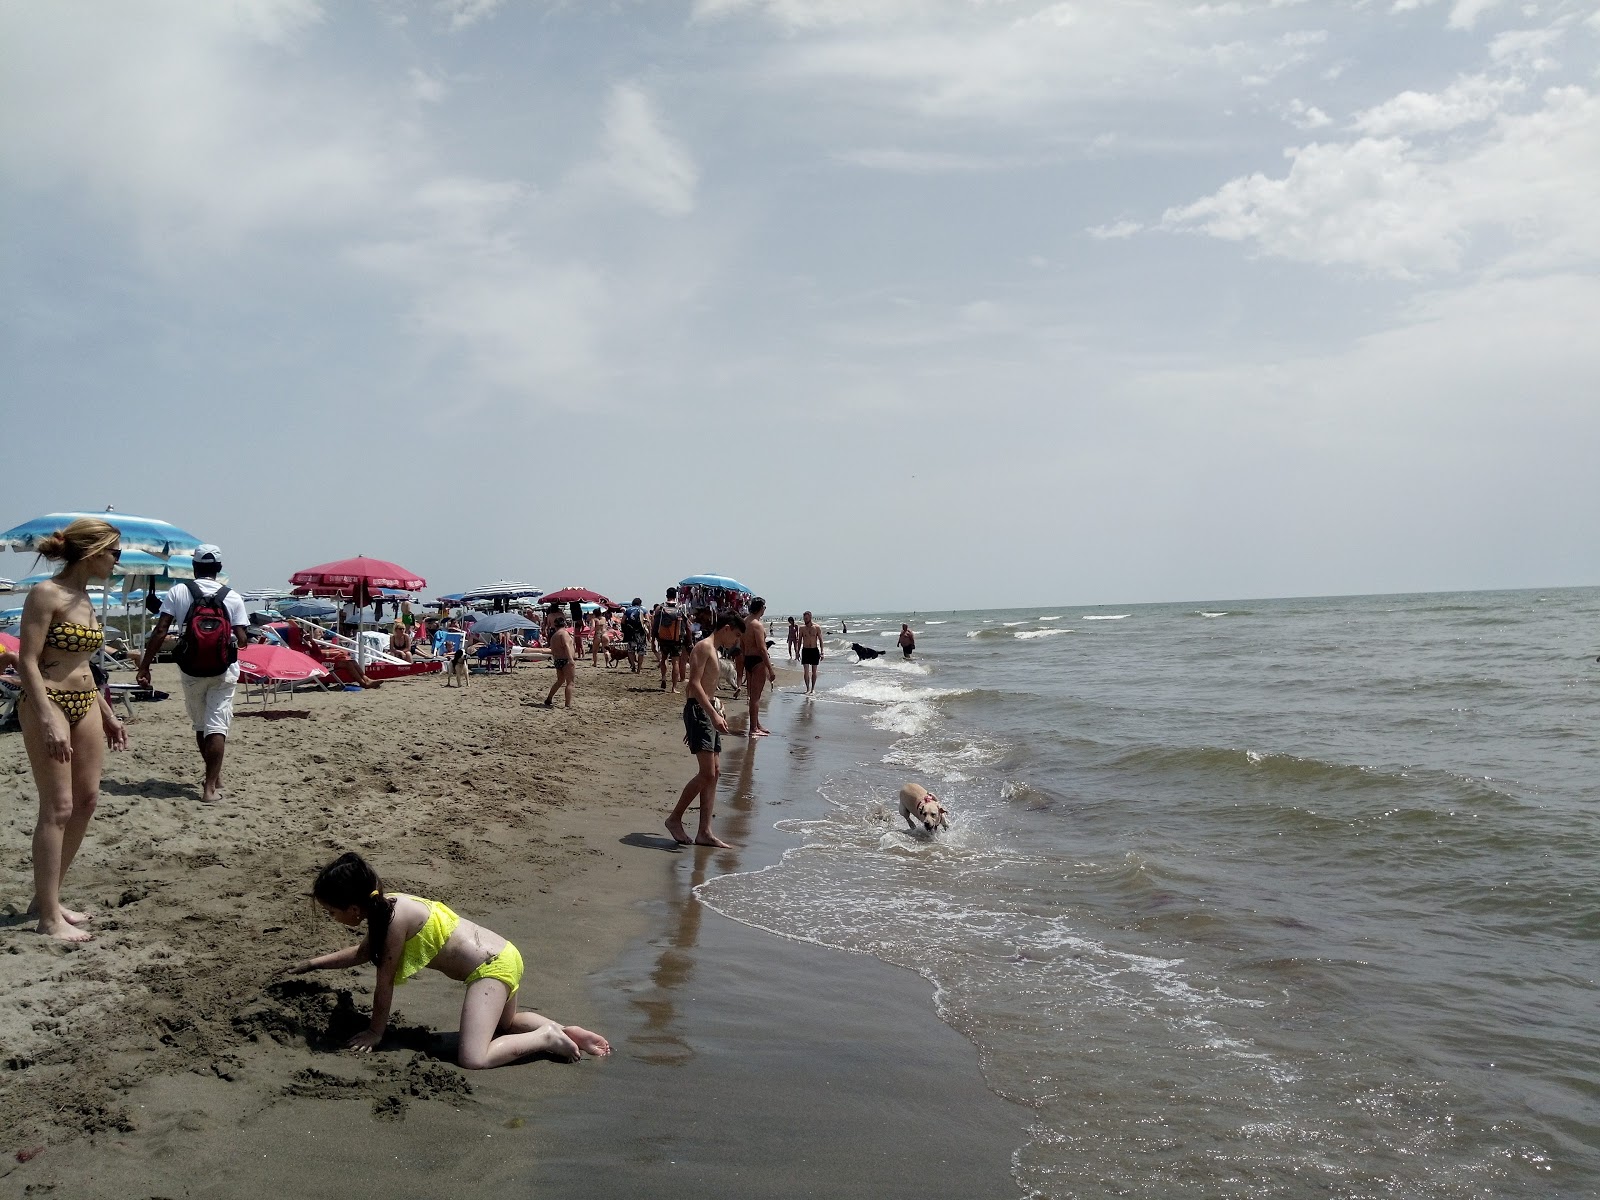 Bocca di Leone beach'in fotoğrafı plaj tatil beldesi alanı